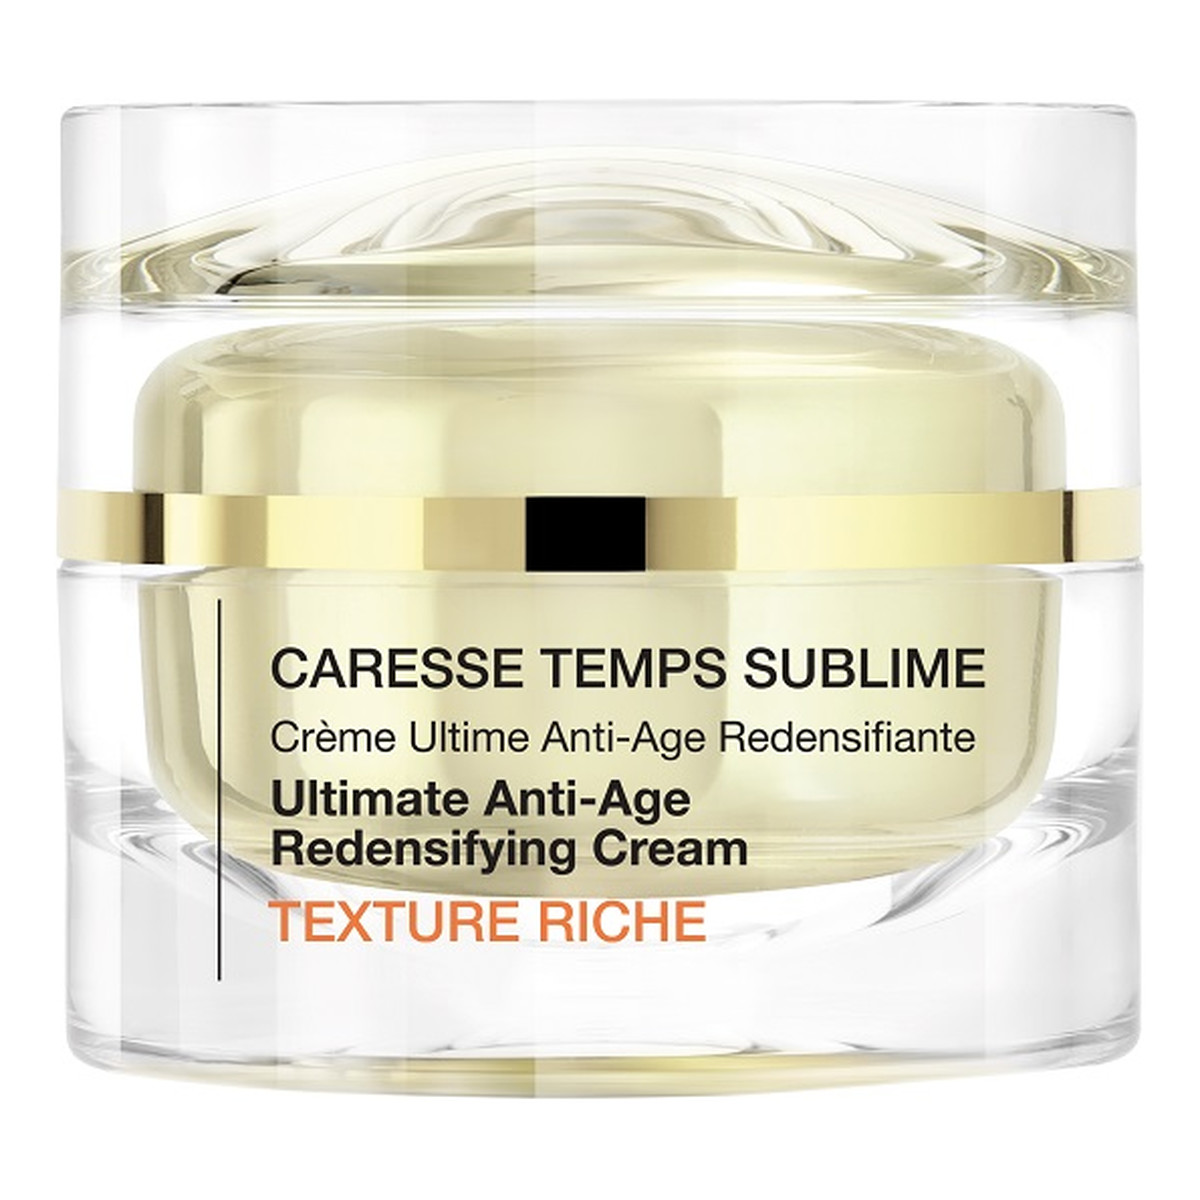 Qiriness Caresse Temps Sublime Texture Riche krem poprawiający gęstość skóry przeciwstarzeniowy 50ml